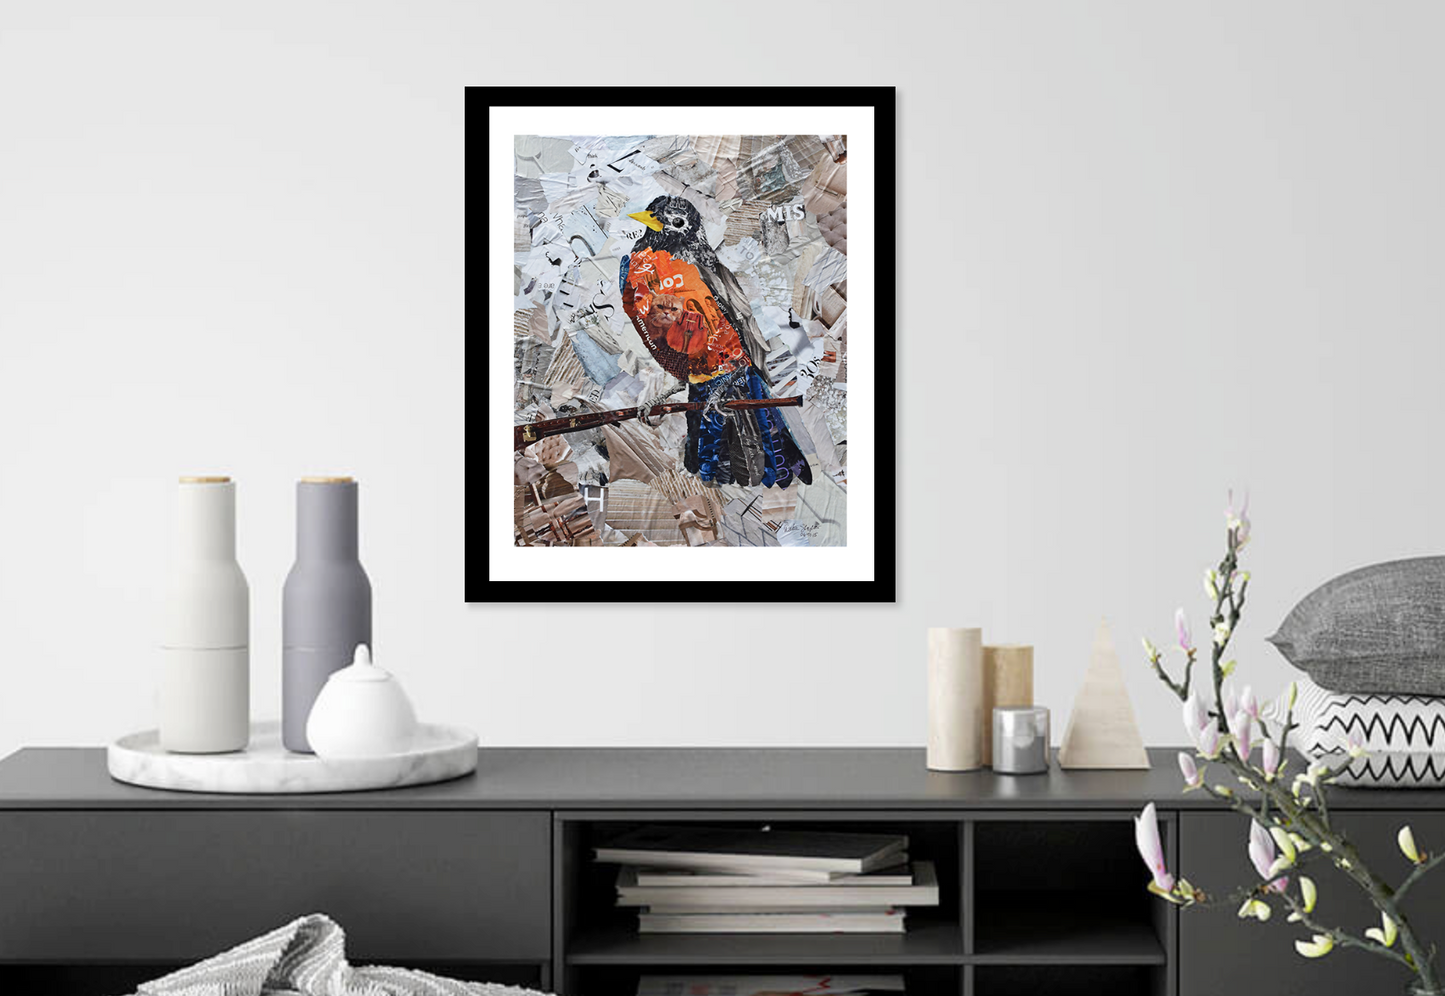 Bird art of a robin